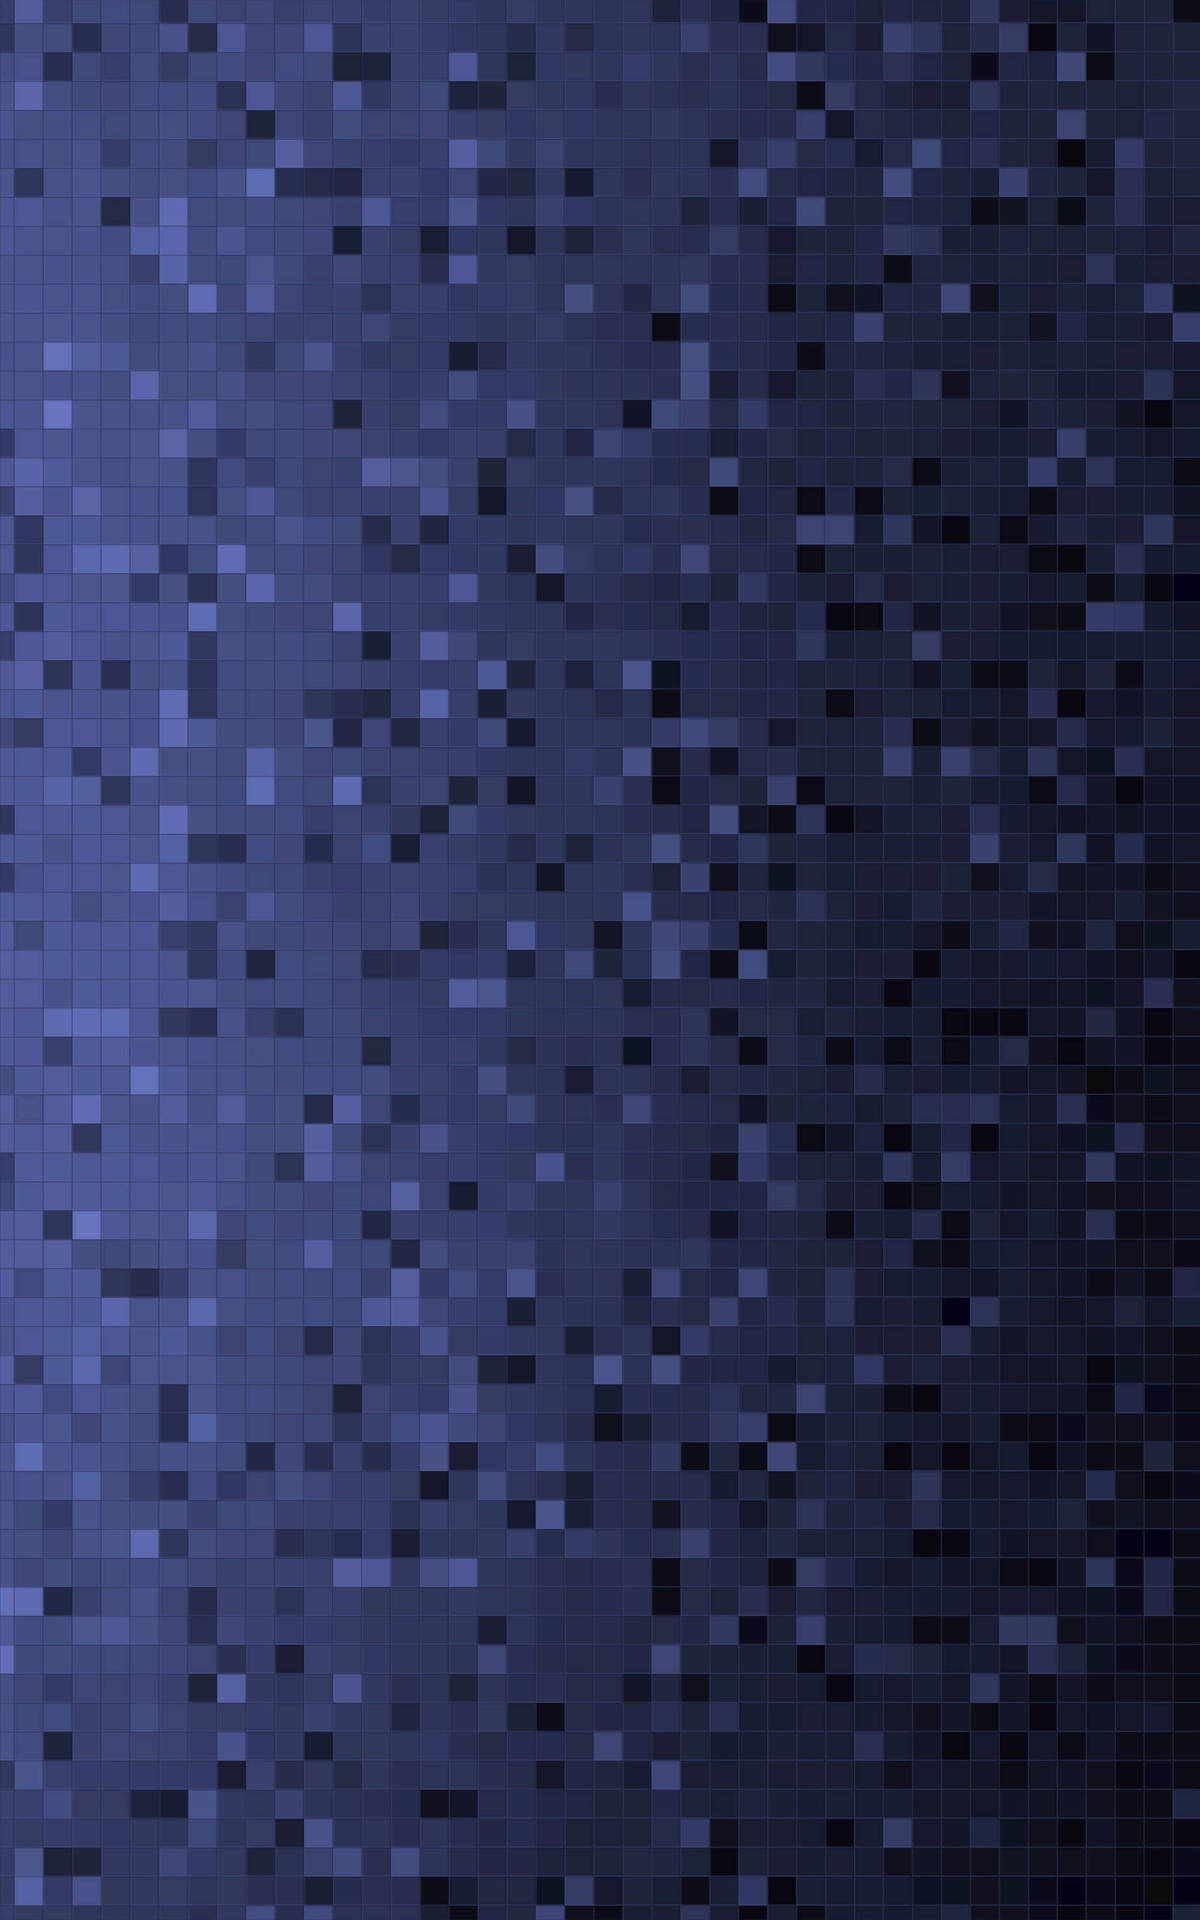 Abstract Dark Pixel Art Wallpaper